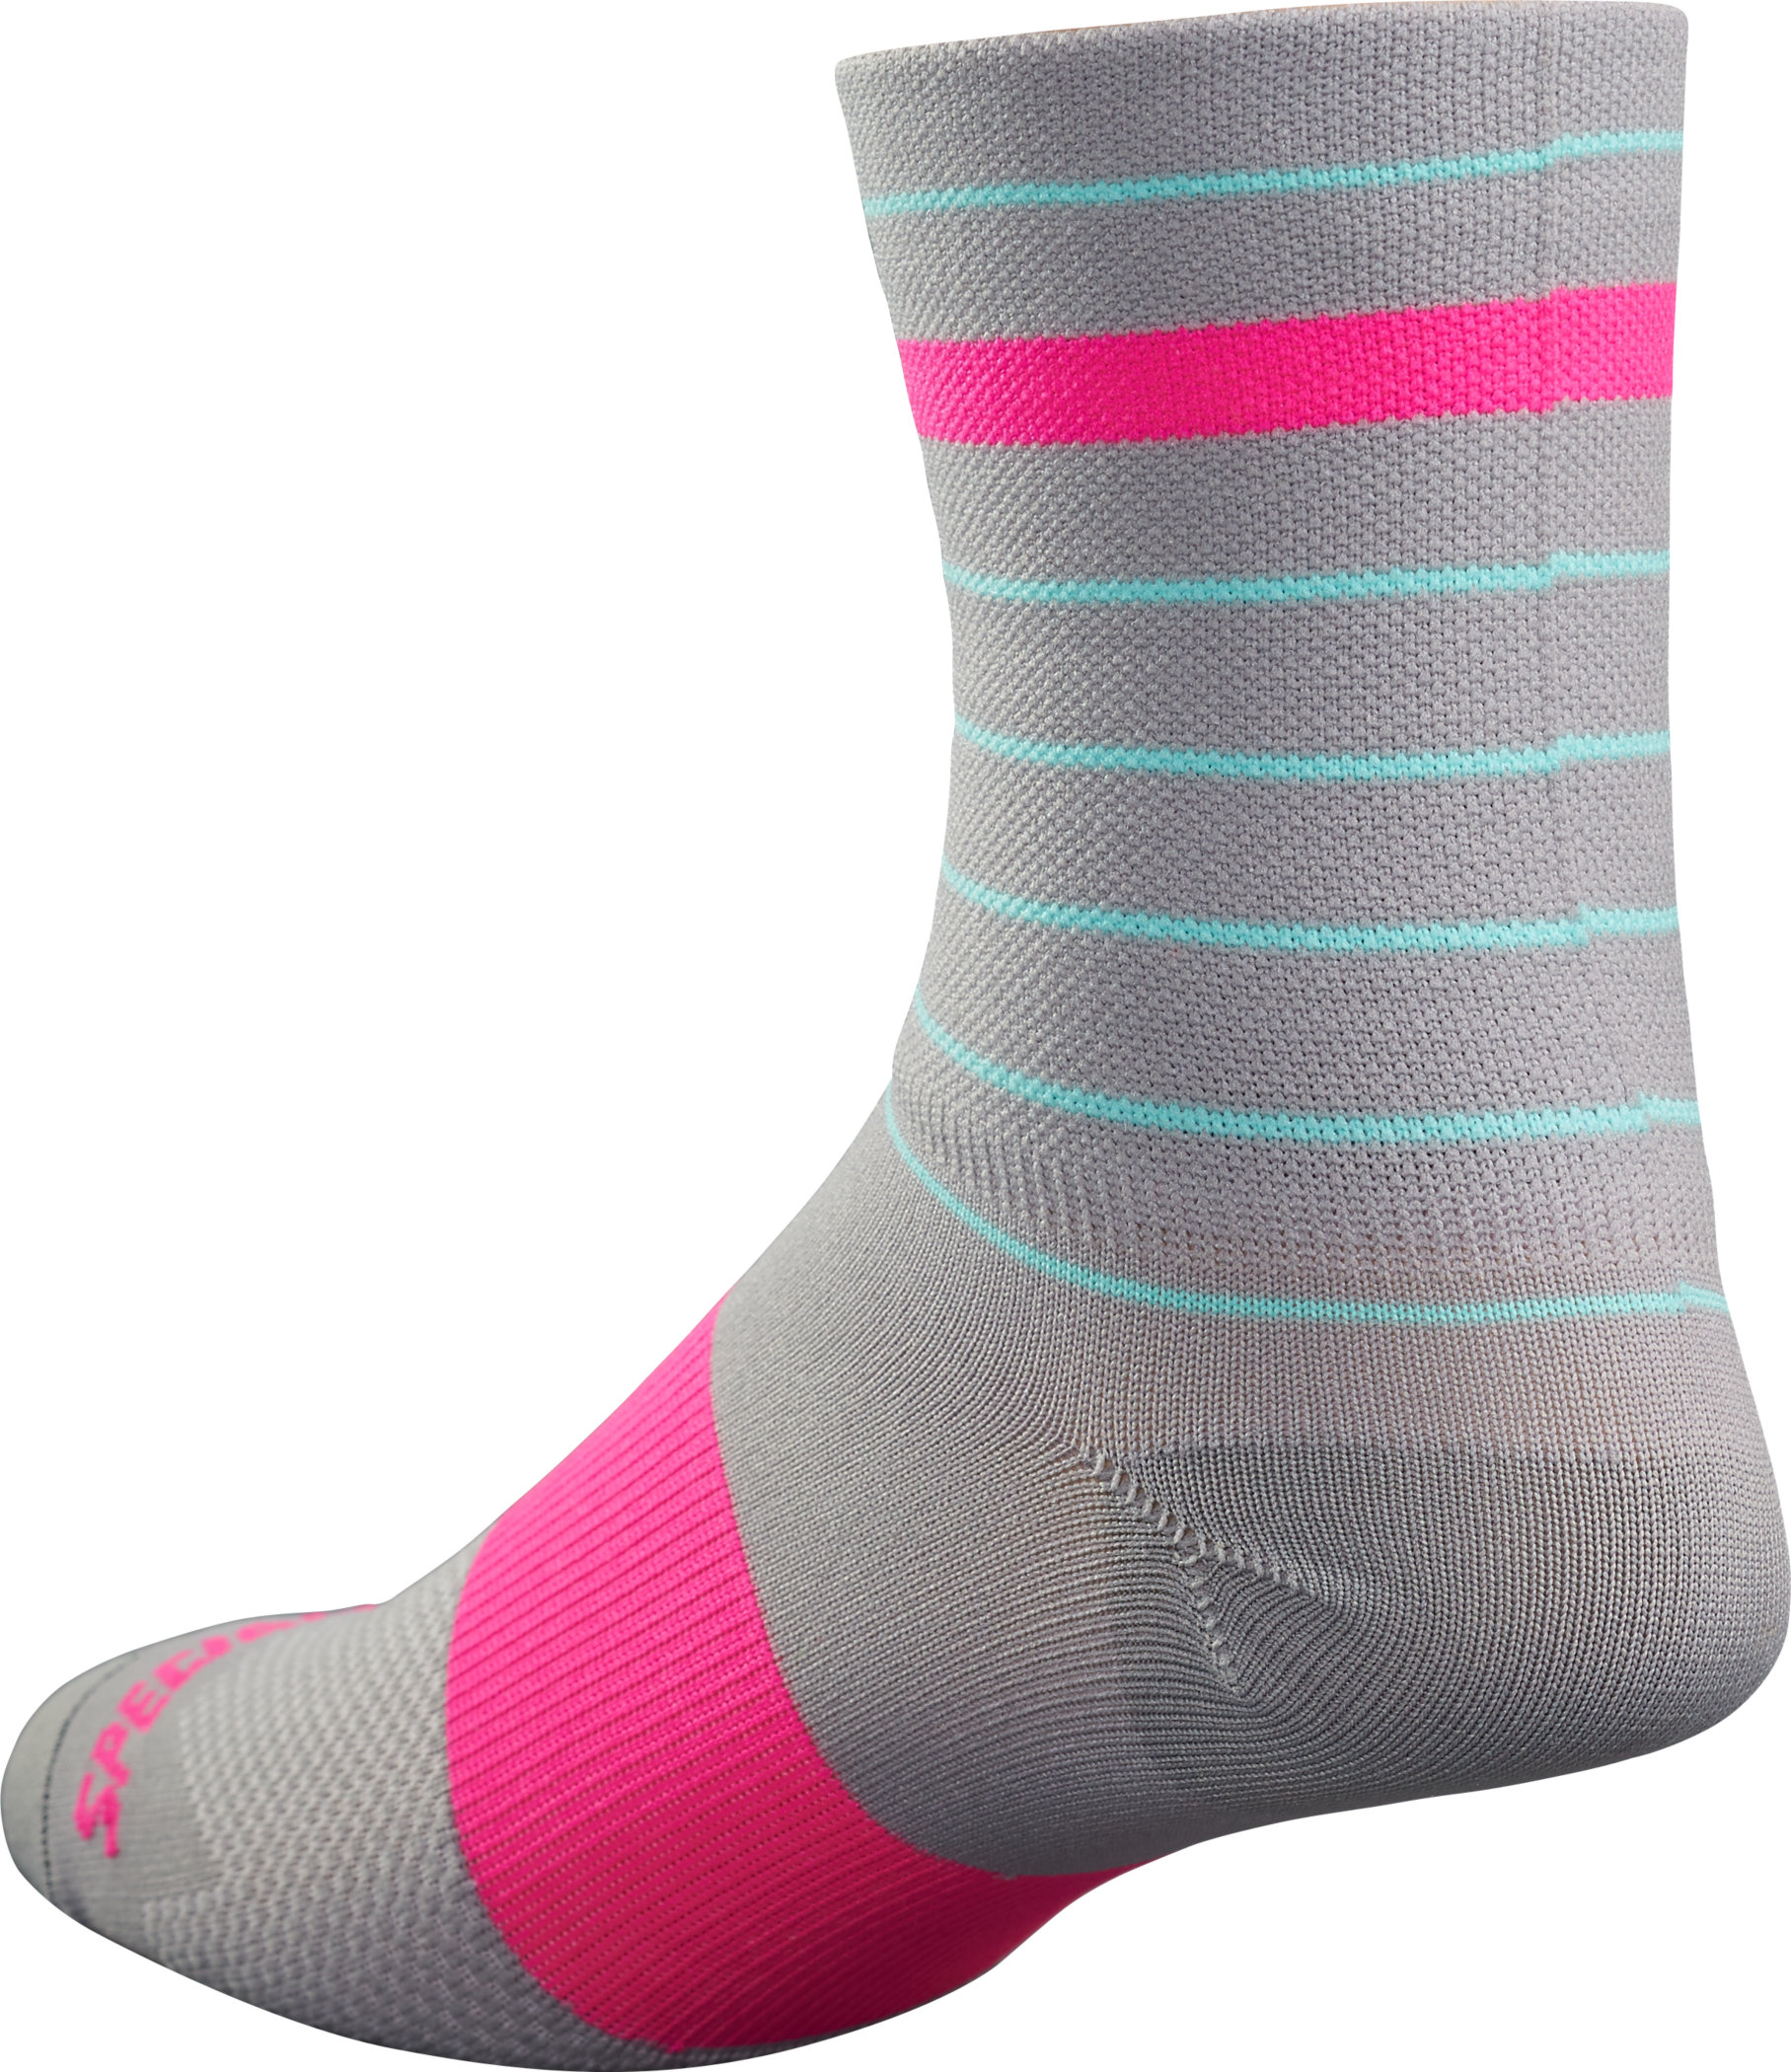 RBX Tall Socks | Specialized.com